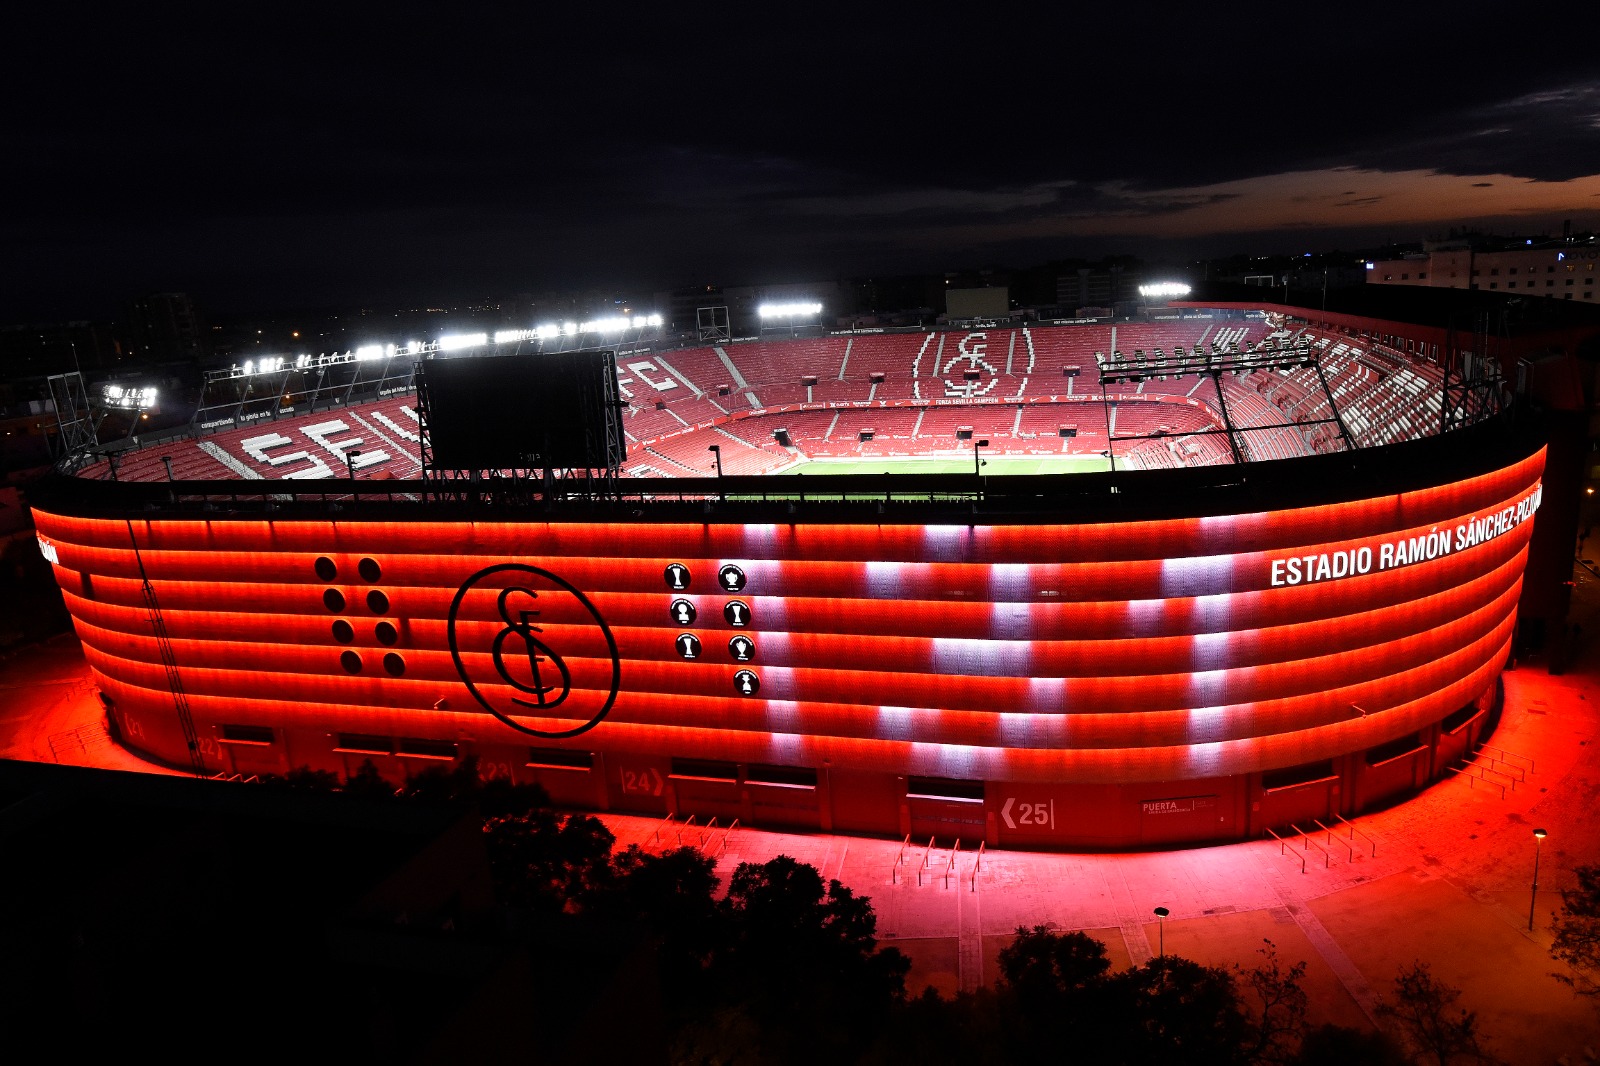 The Ramón Sánchez-Pizjuán lit up for Sevilla's 131st anniversary